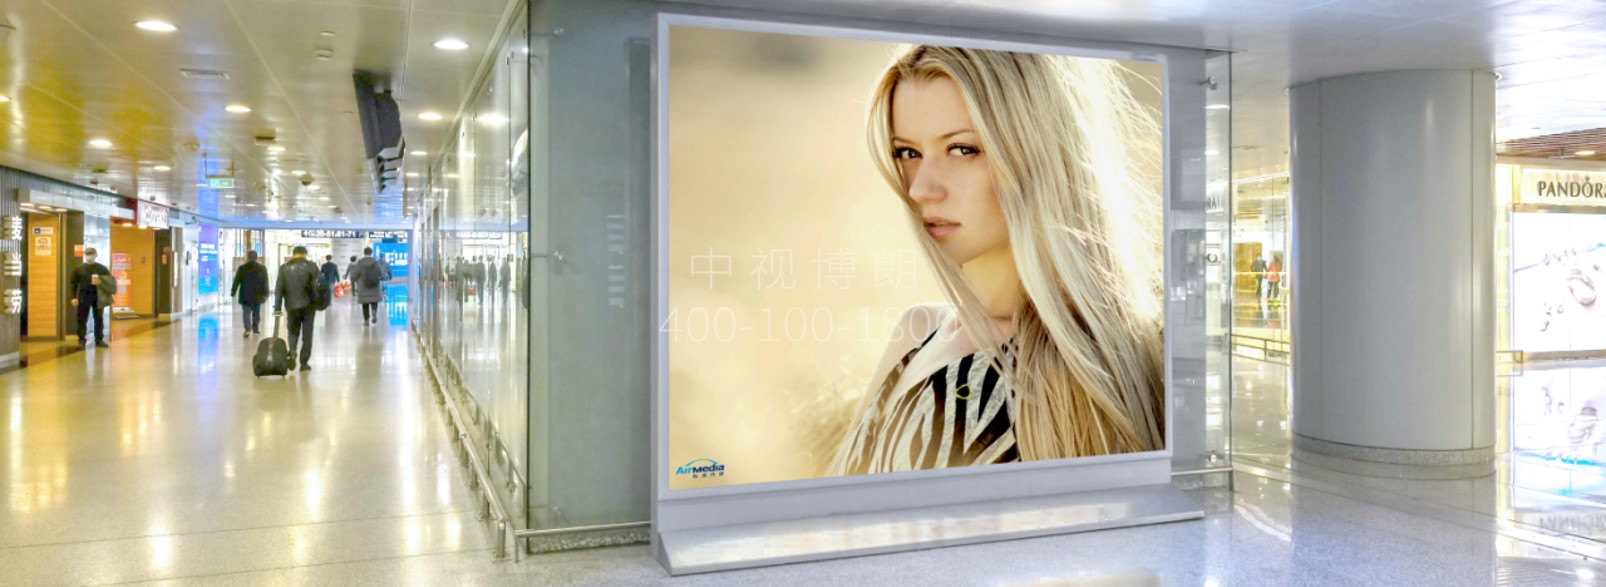 北京首都机场广告-T2国内出发通道灯箱D008